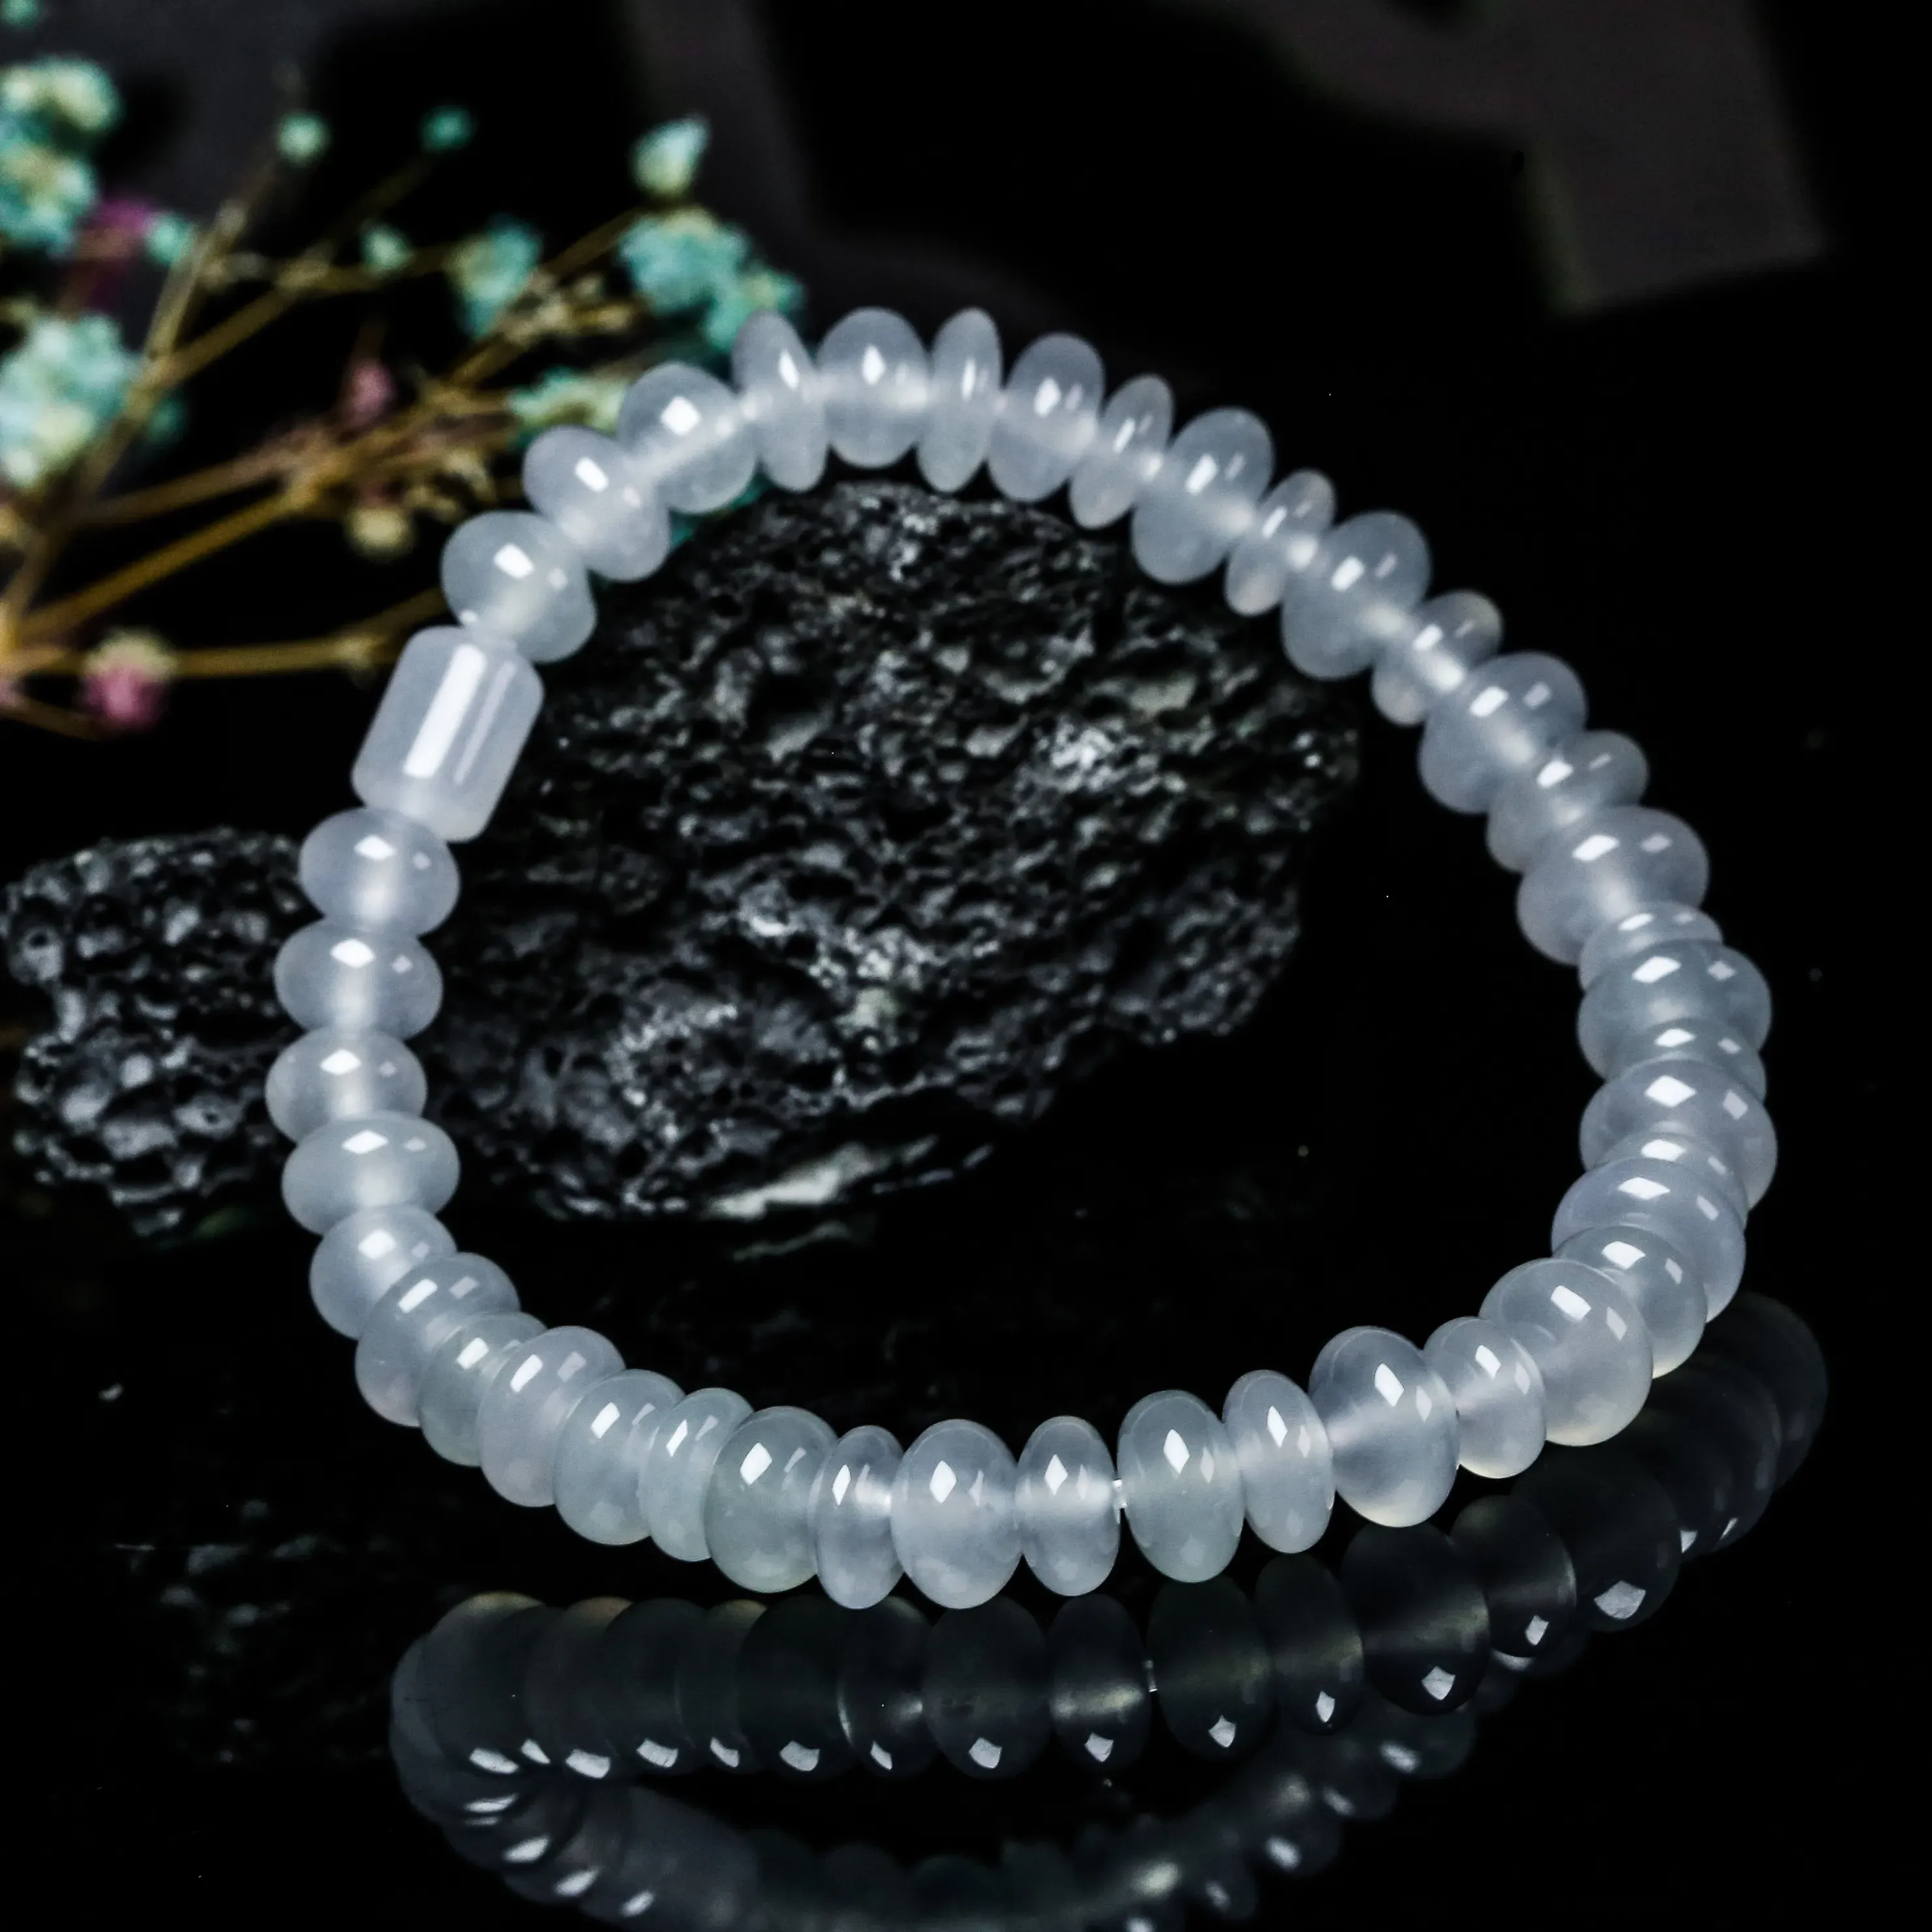 推荐款冰种珠子翡翠手串。共42颗珠子，取其中一颗珠尺寸大约6.8*4mm，冰透水润，质地细腻。